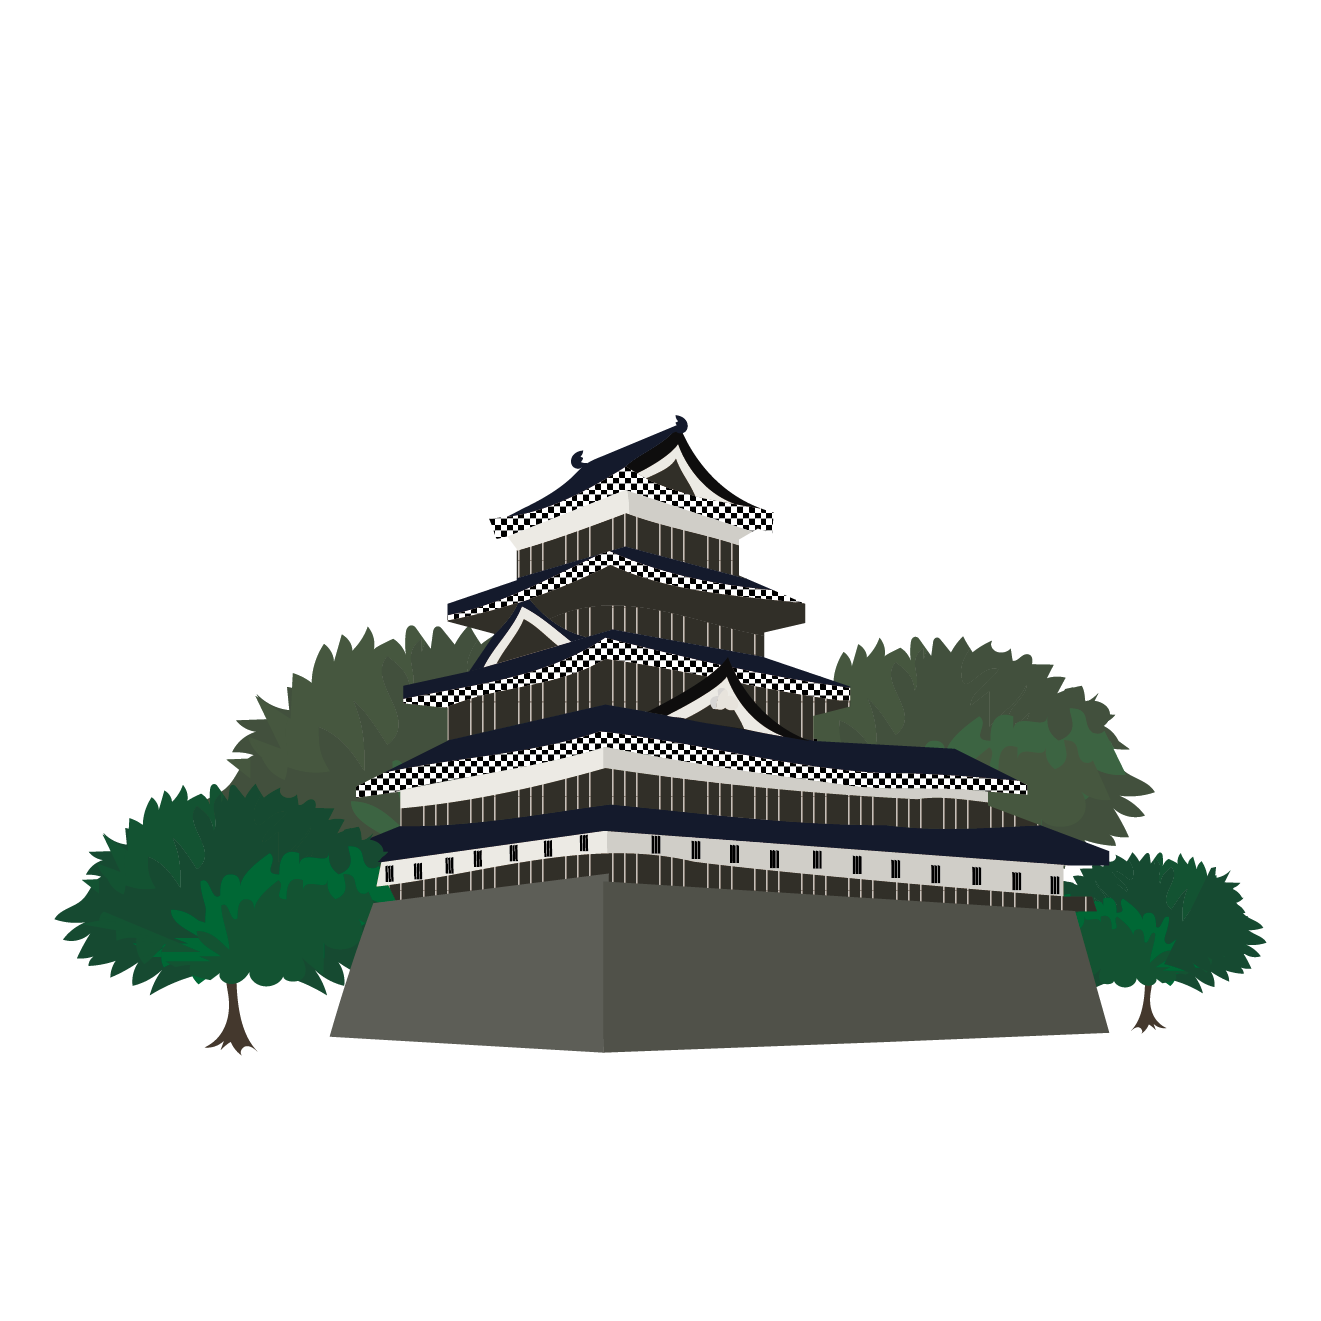 お城 イラスト 日本の城 商用フリー 無料 のイラスト素材なら